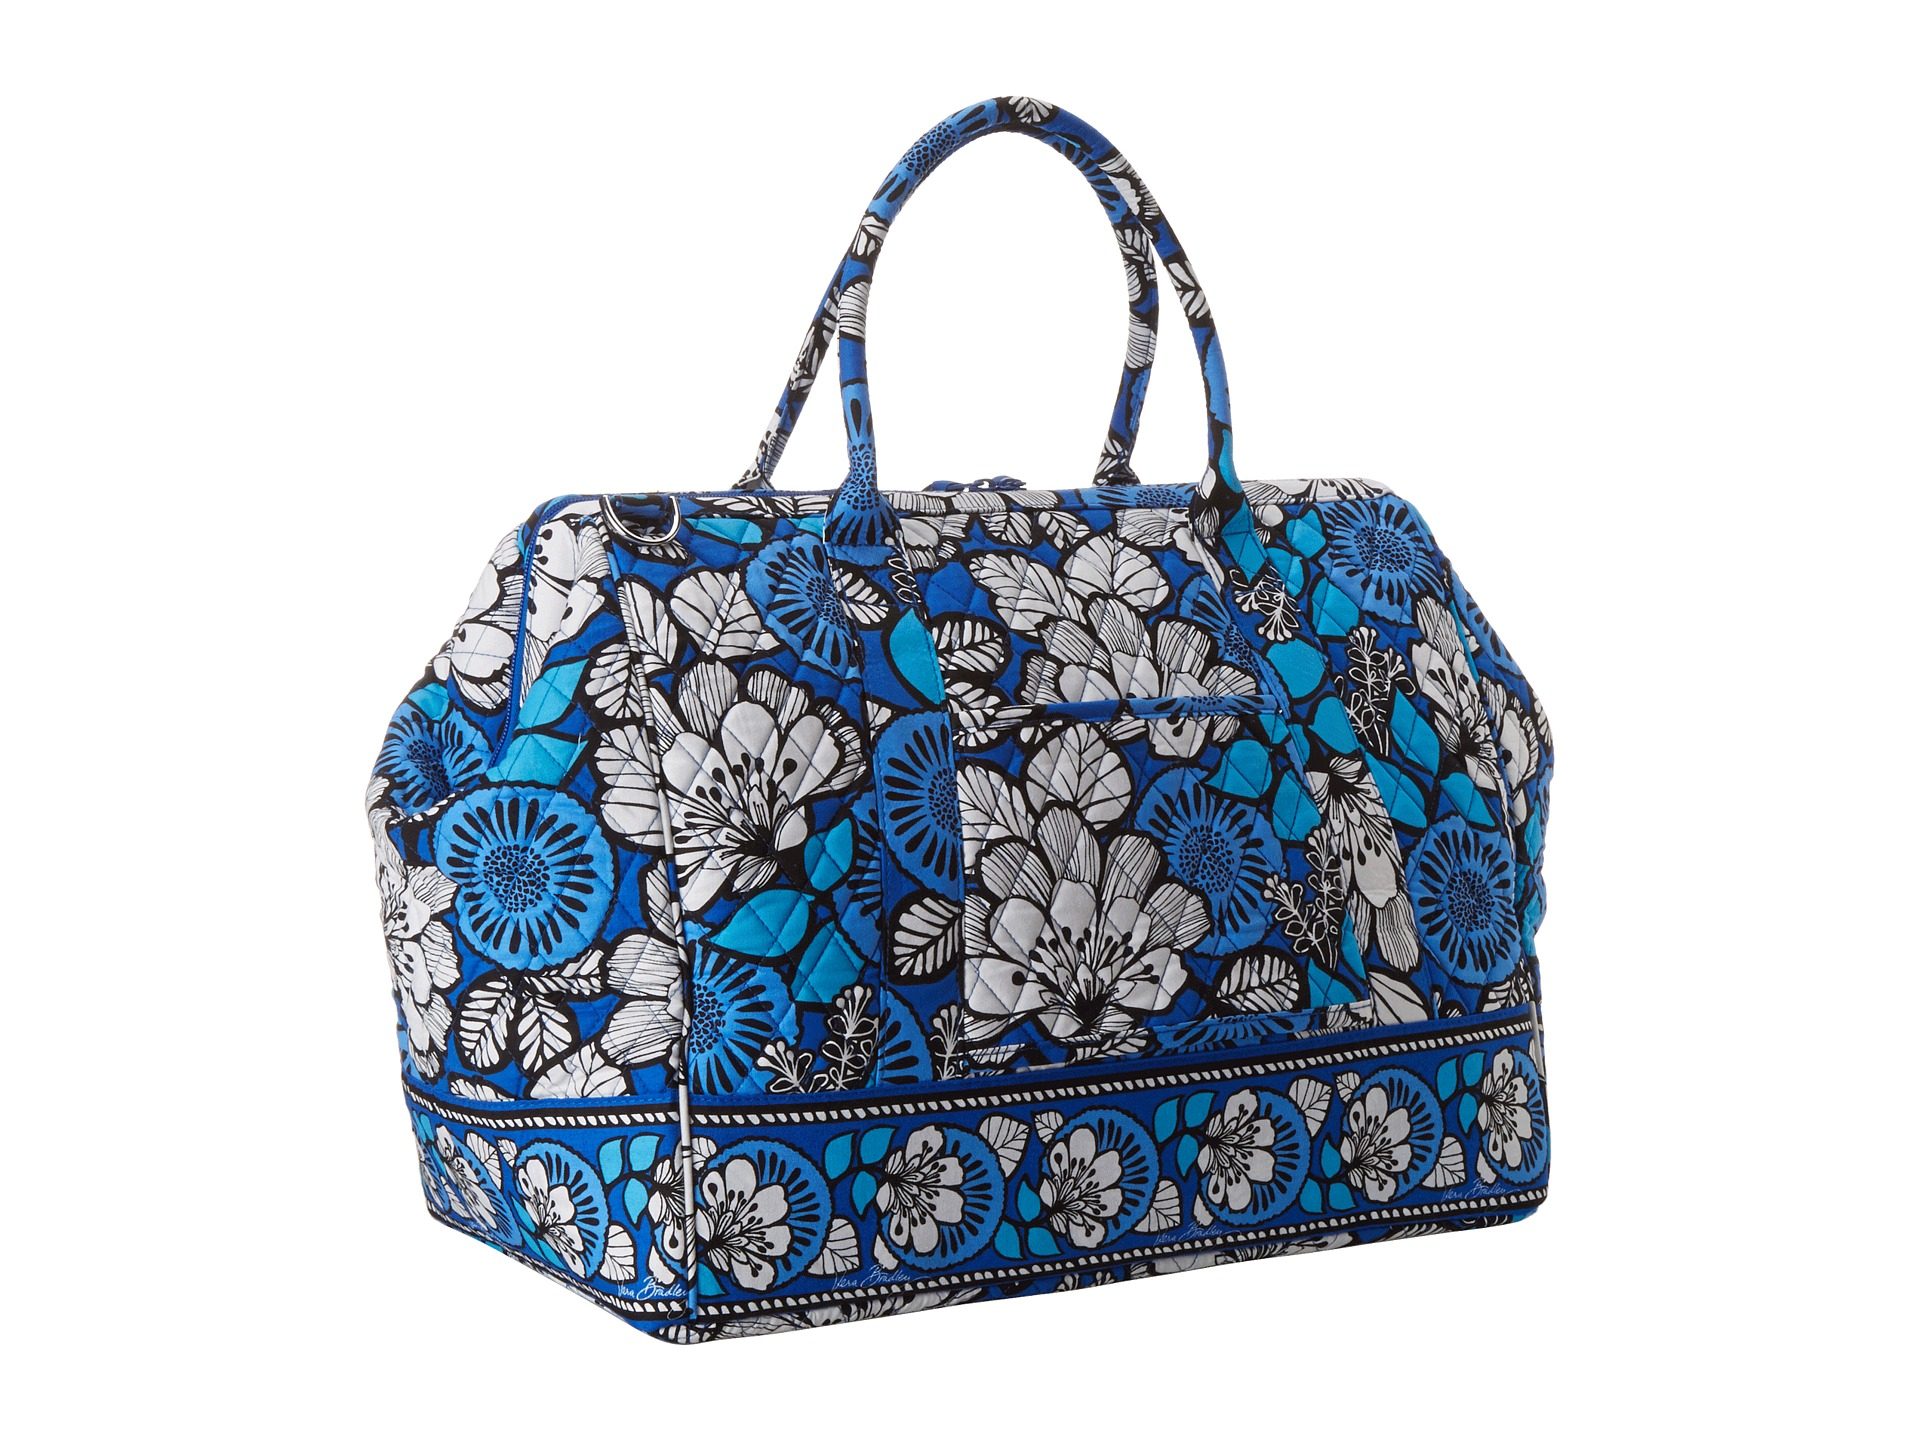 Vera Bradley Frame Travel Bag in Floral (Blue Bayou)